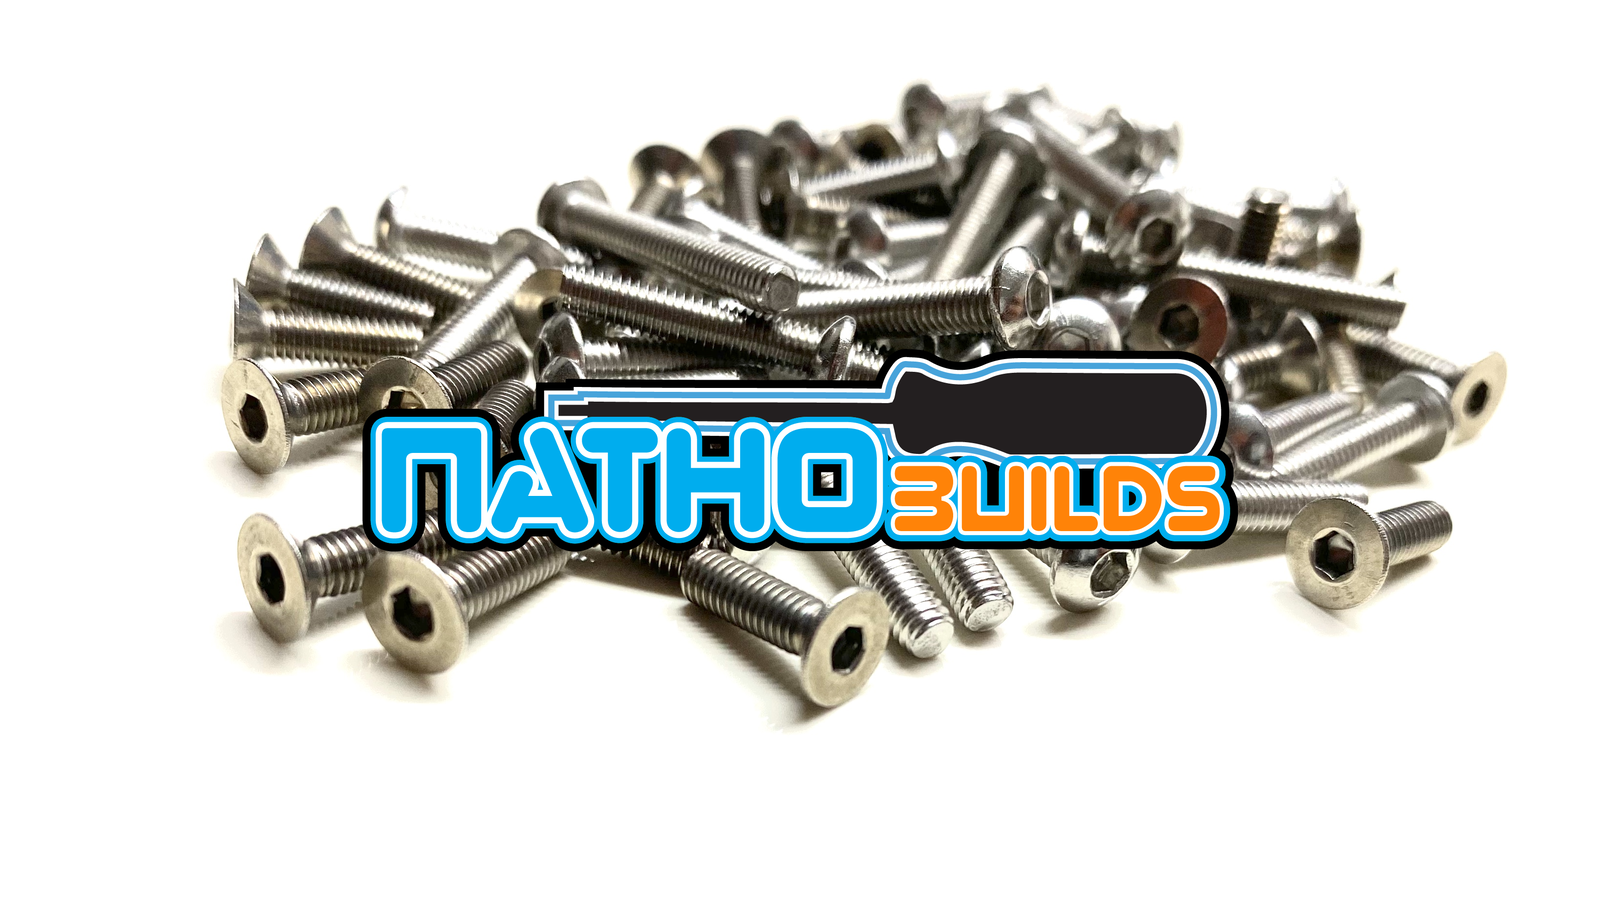 NathoBuilds: Stainless Steel Screw Kits - 4WD - X-Ray XB4 2017